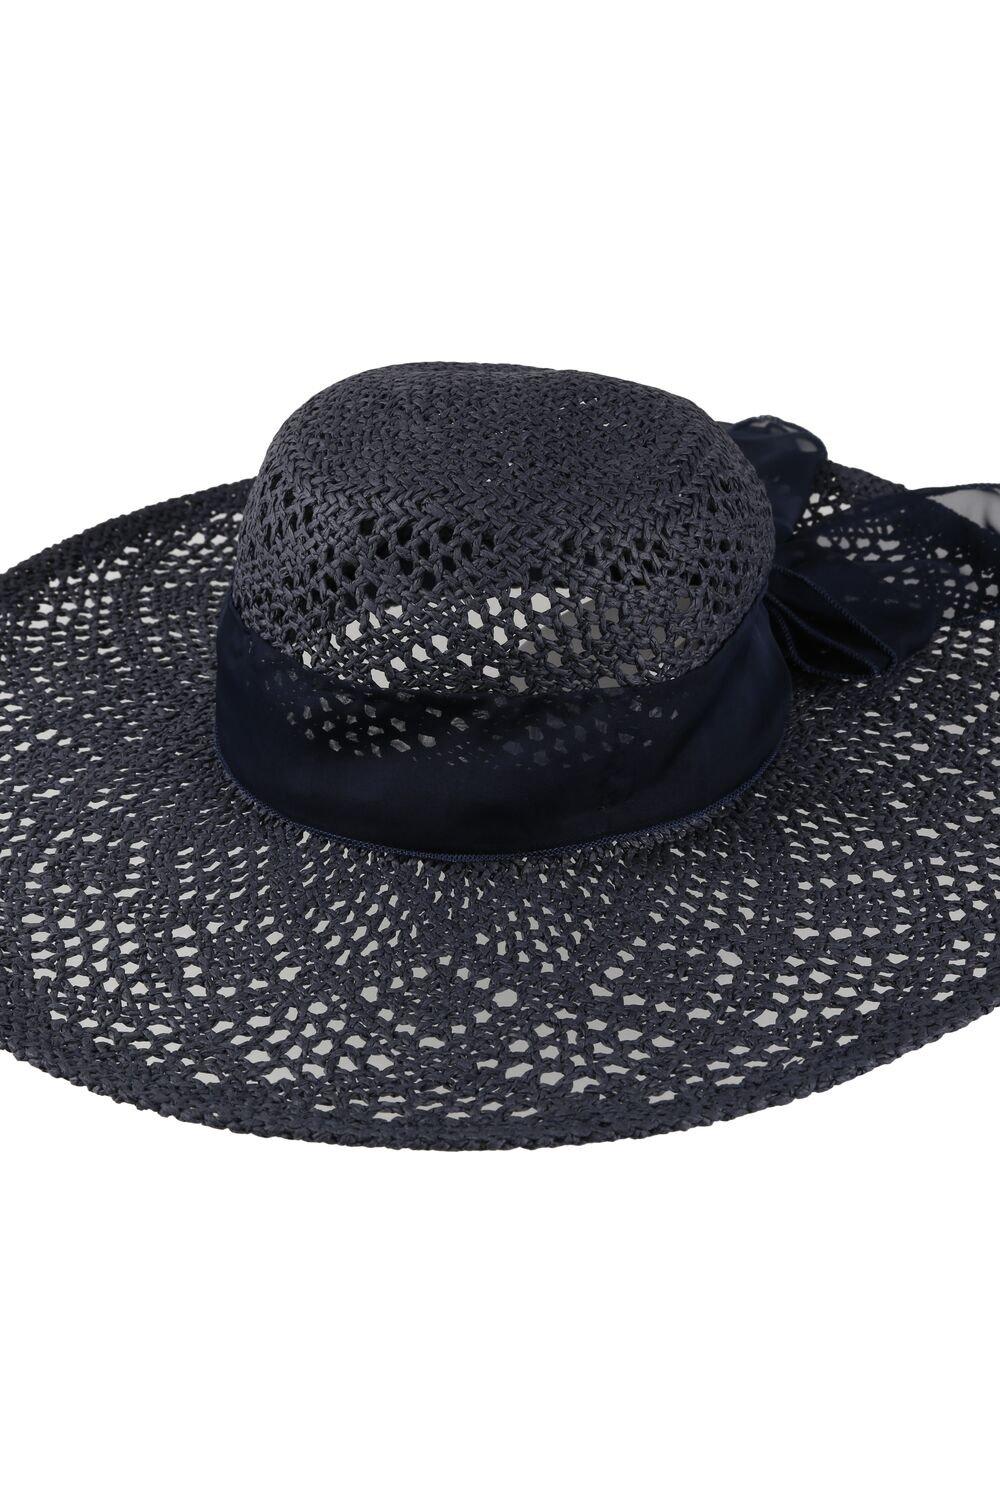 'Taura III' Соломенная бумажная шляпа от солнца Regatta, синий персонализированная широкополая фетровая шляпа портативная дышащая унисекс шляпа женская шляпа ковбойская шляпа